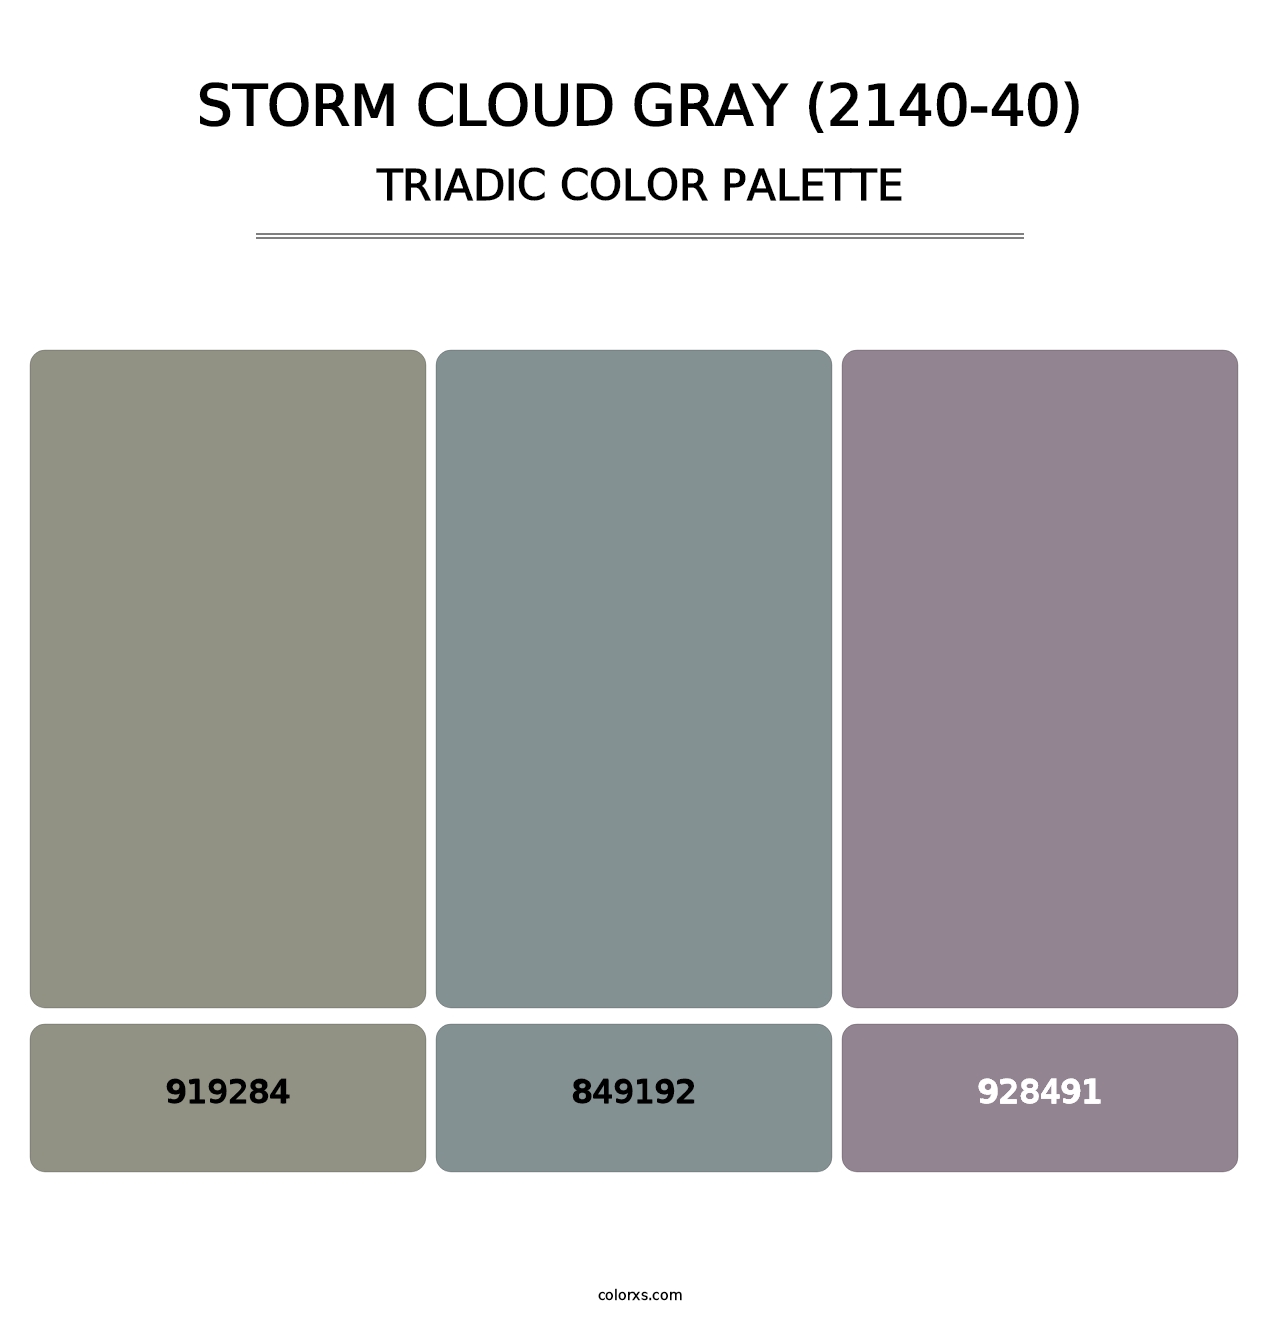 Storm Cloud Gray (2140-40) - Triadic Color Palette